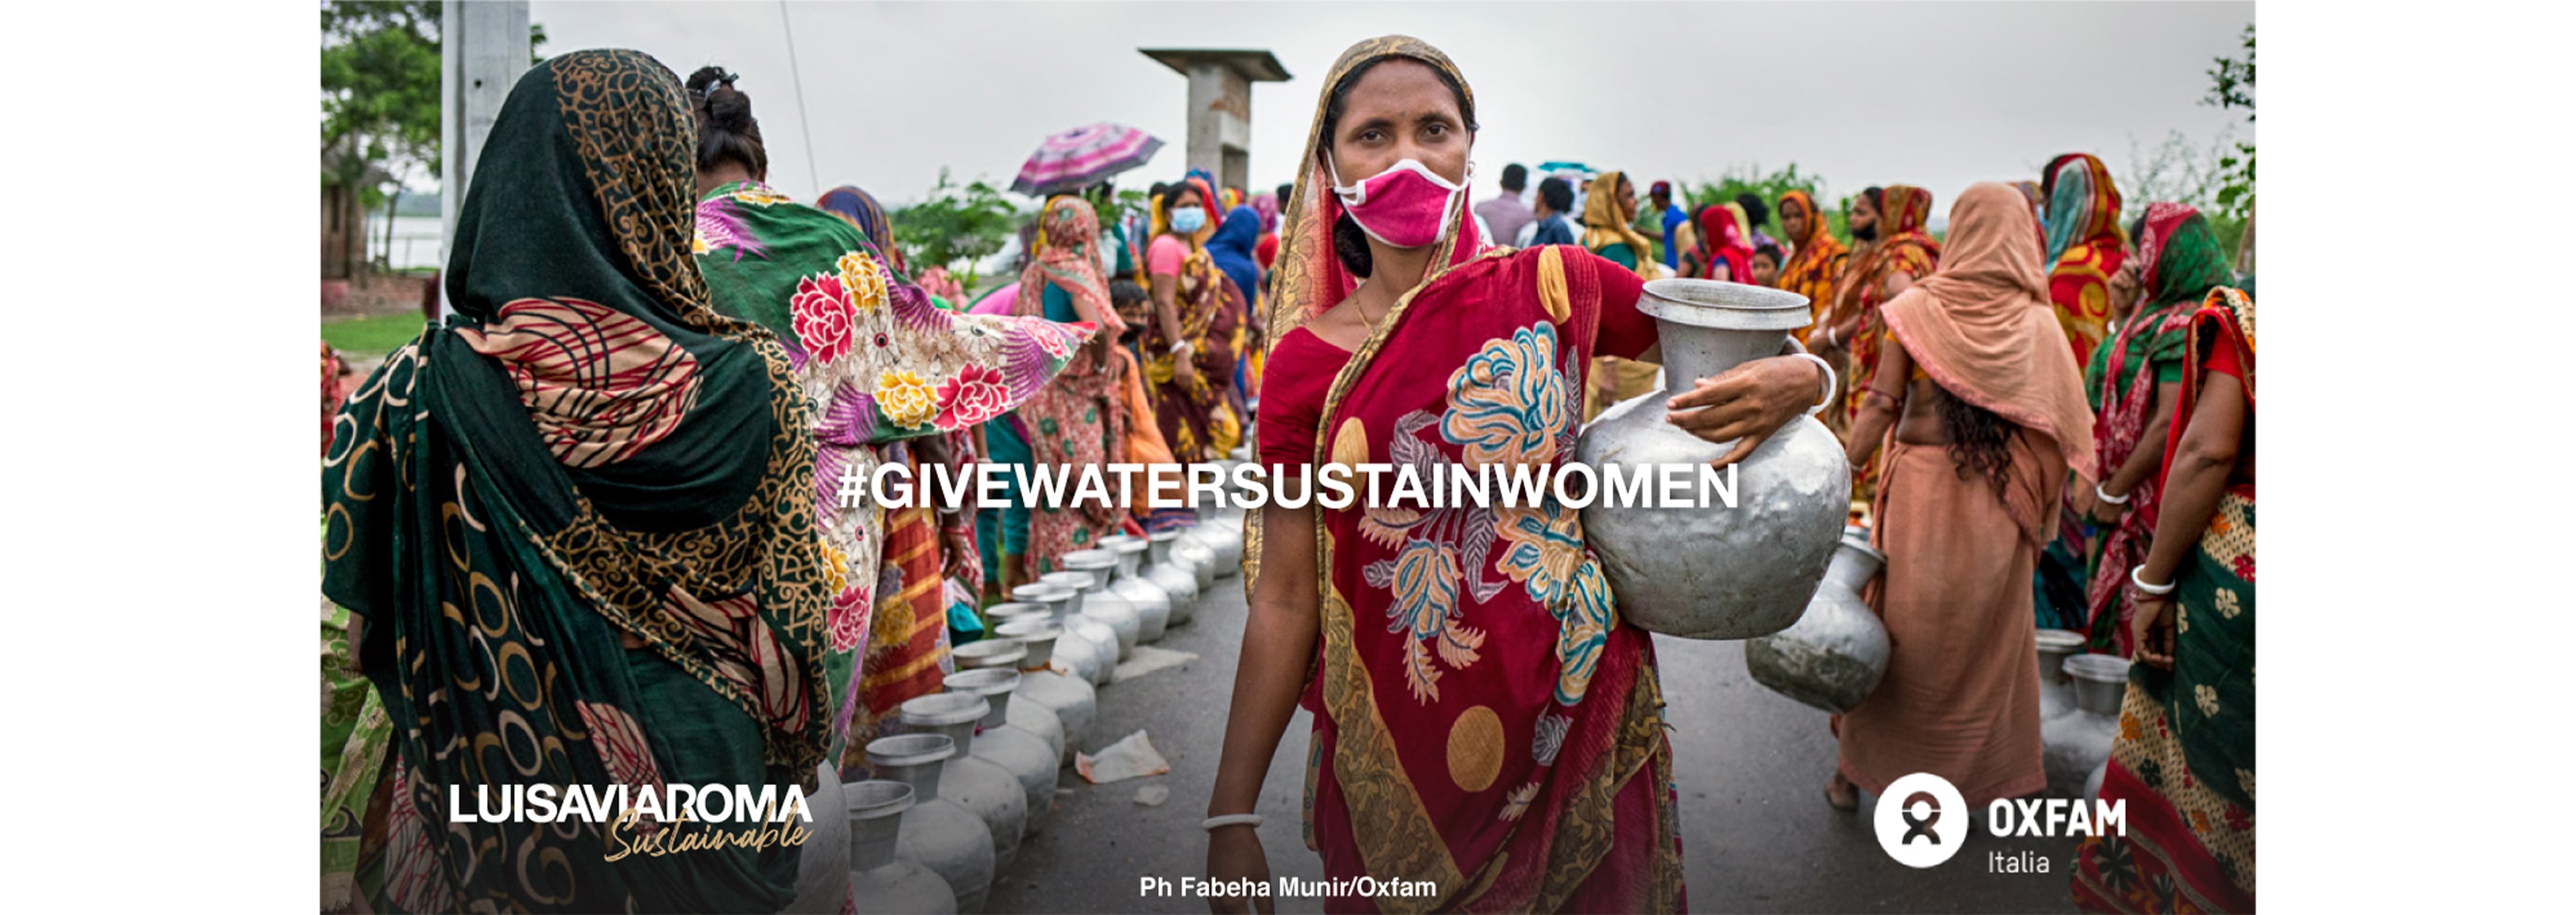 LVRSustainable y Oxfam Italia para Give Water, Sustain Women: la historia de Dorothy